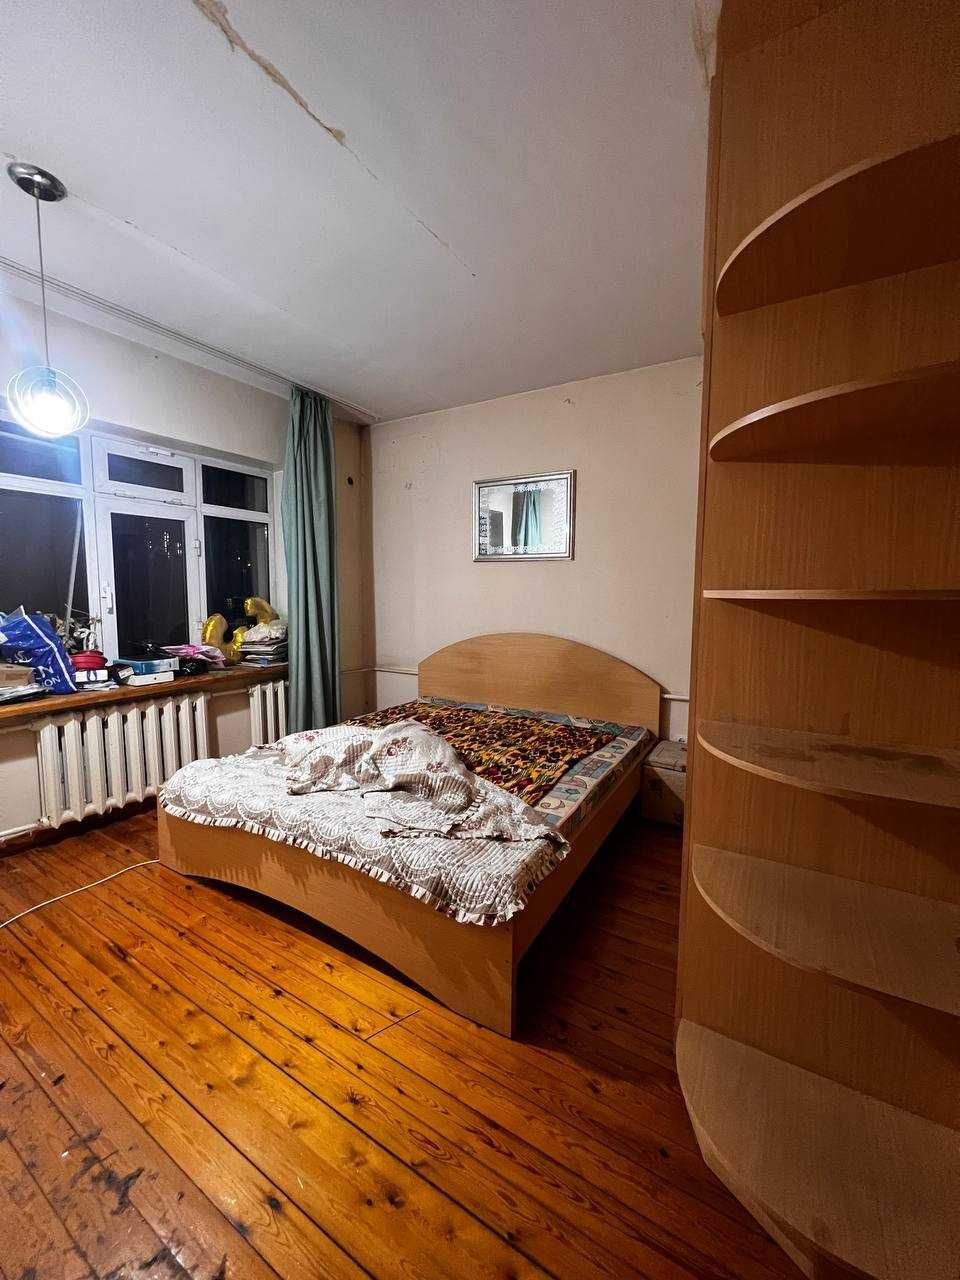 Квартира на Новомосковской по красивой цене 3/4/4 73 м²!